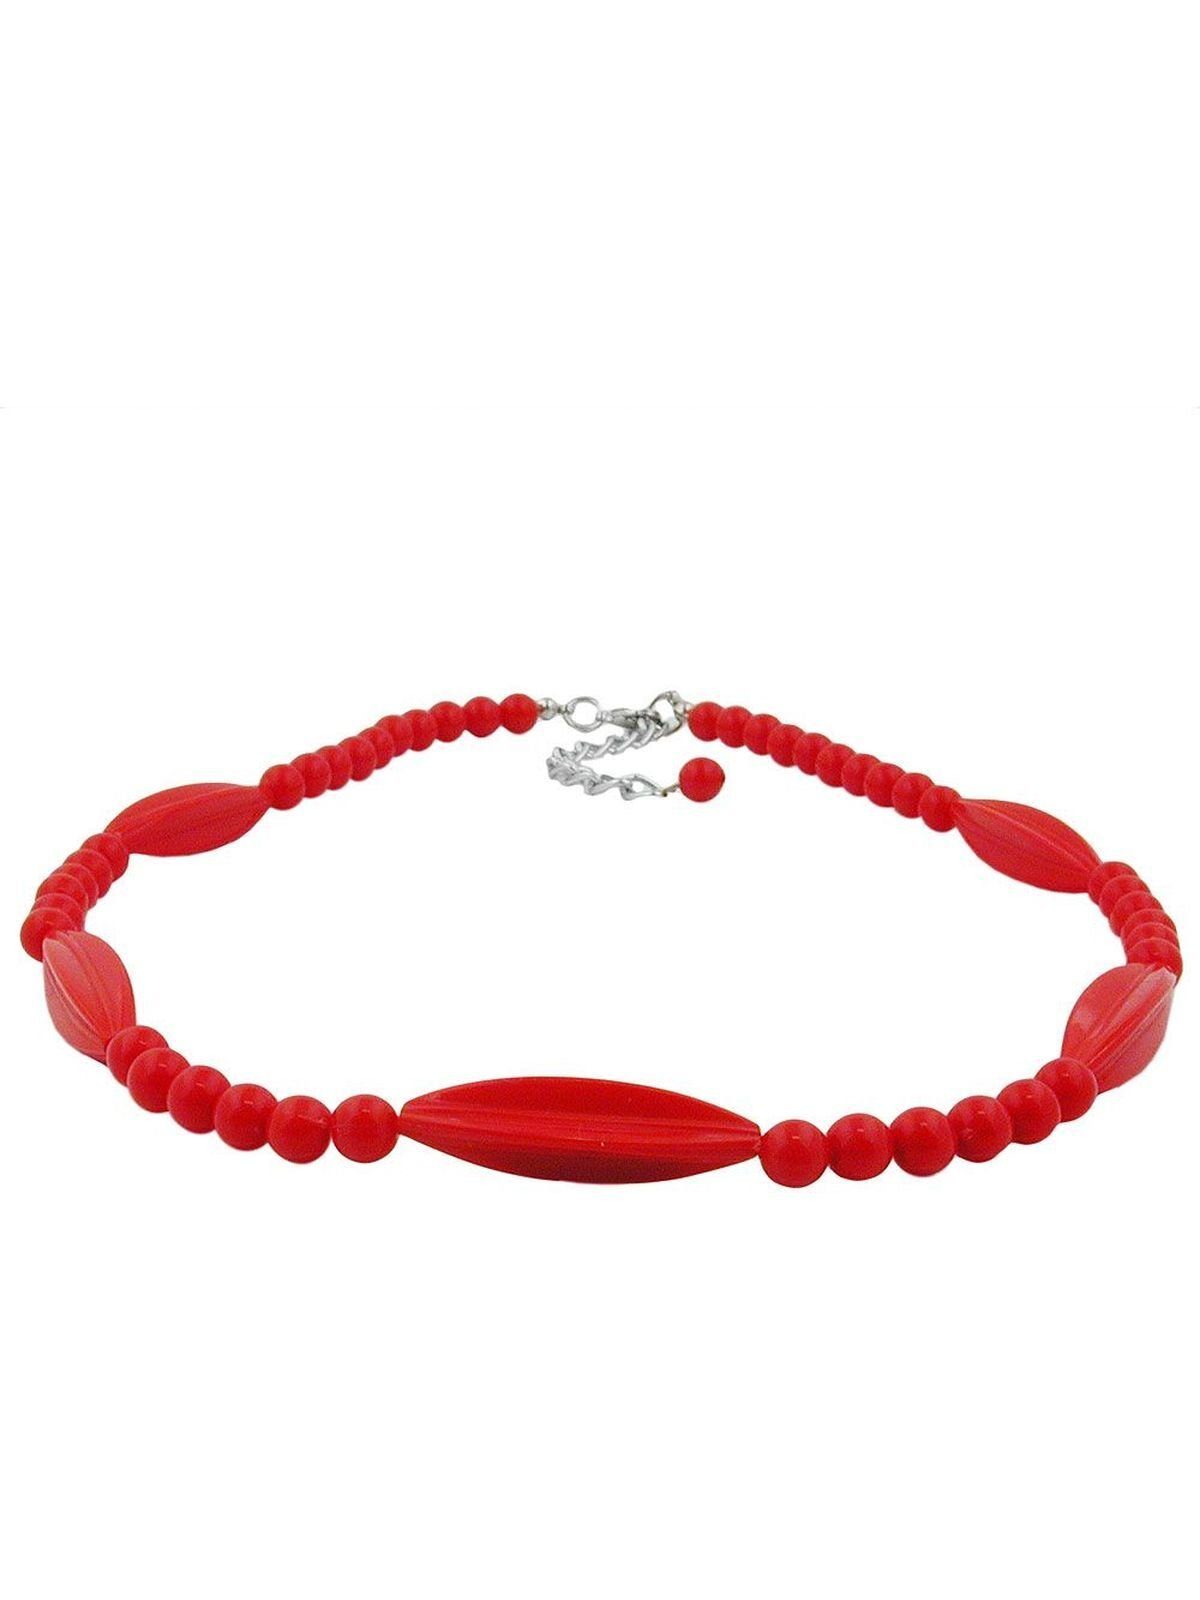 Rillenolive Kunststoff (1-tlg) und Perlenkette Gallay silberfarbig Perle Verschluss rot 42cm